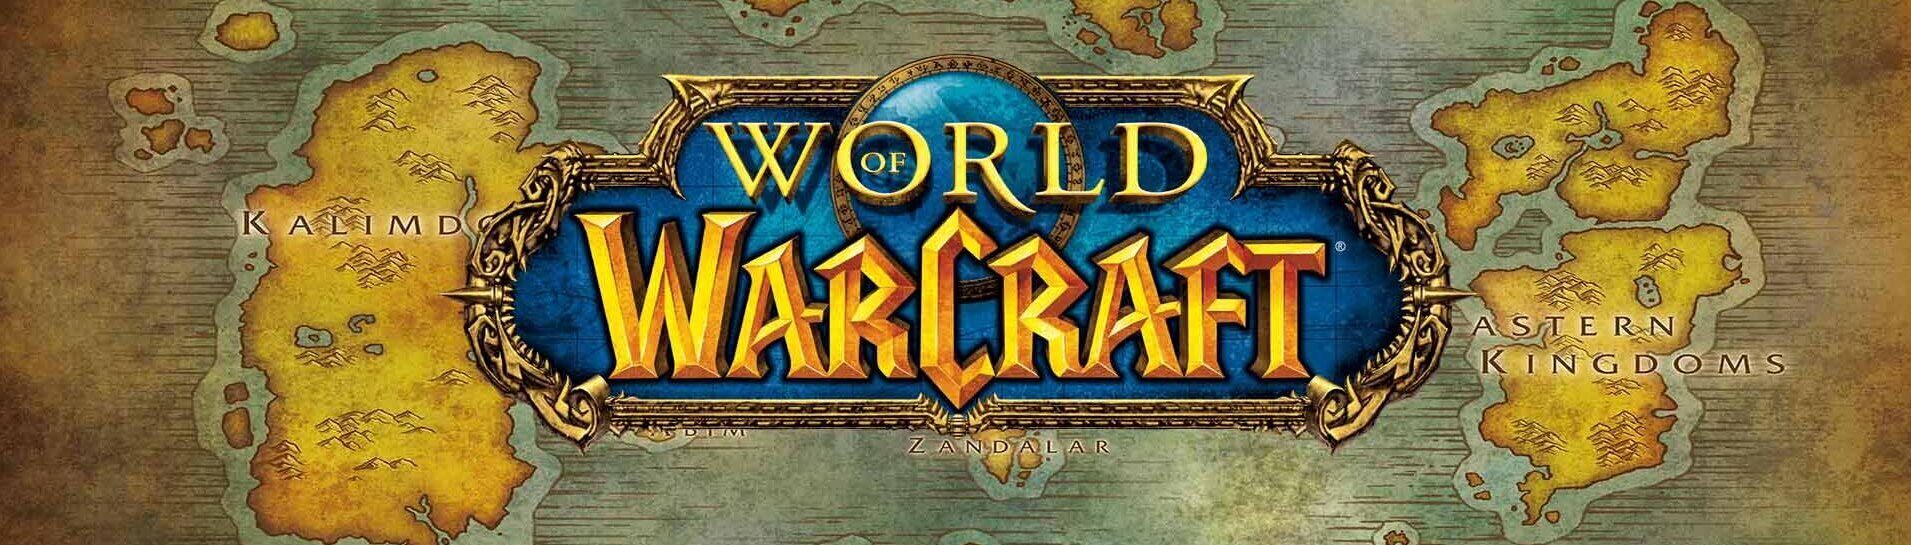 Svet Warcrafta Outlander Websajt